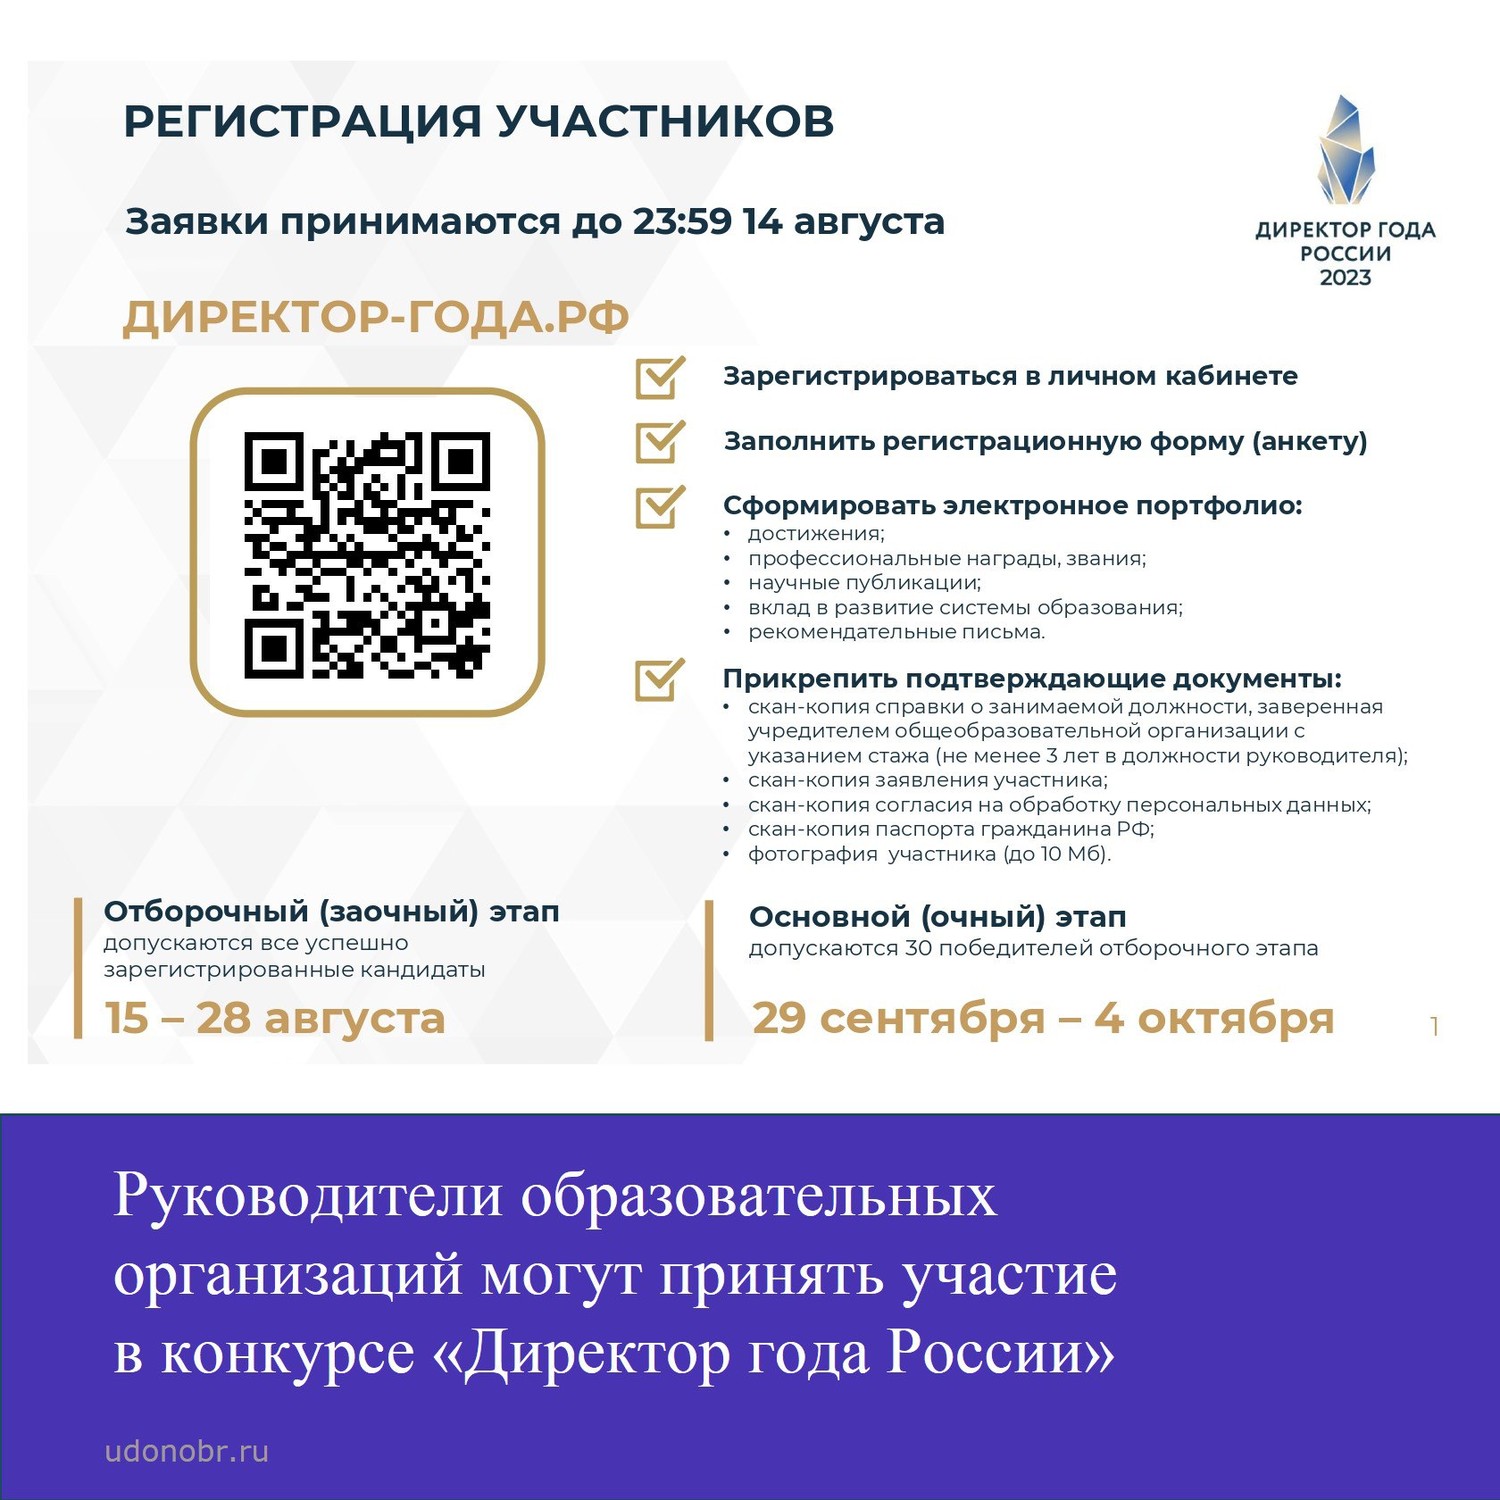 Руководители образовательных организаций могут принять участие во Всероссийском профессиональном конкурсе «Директор года России»